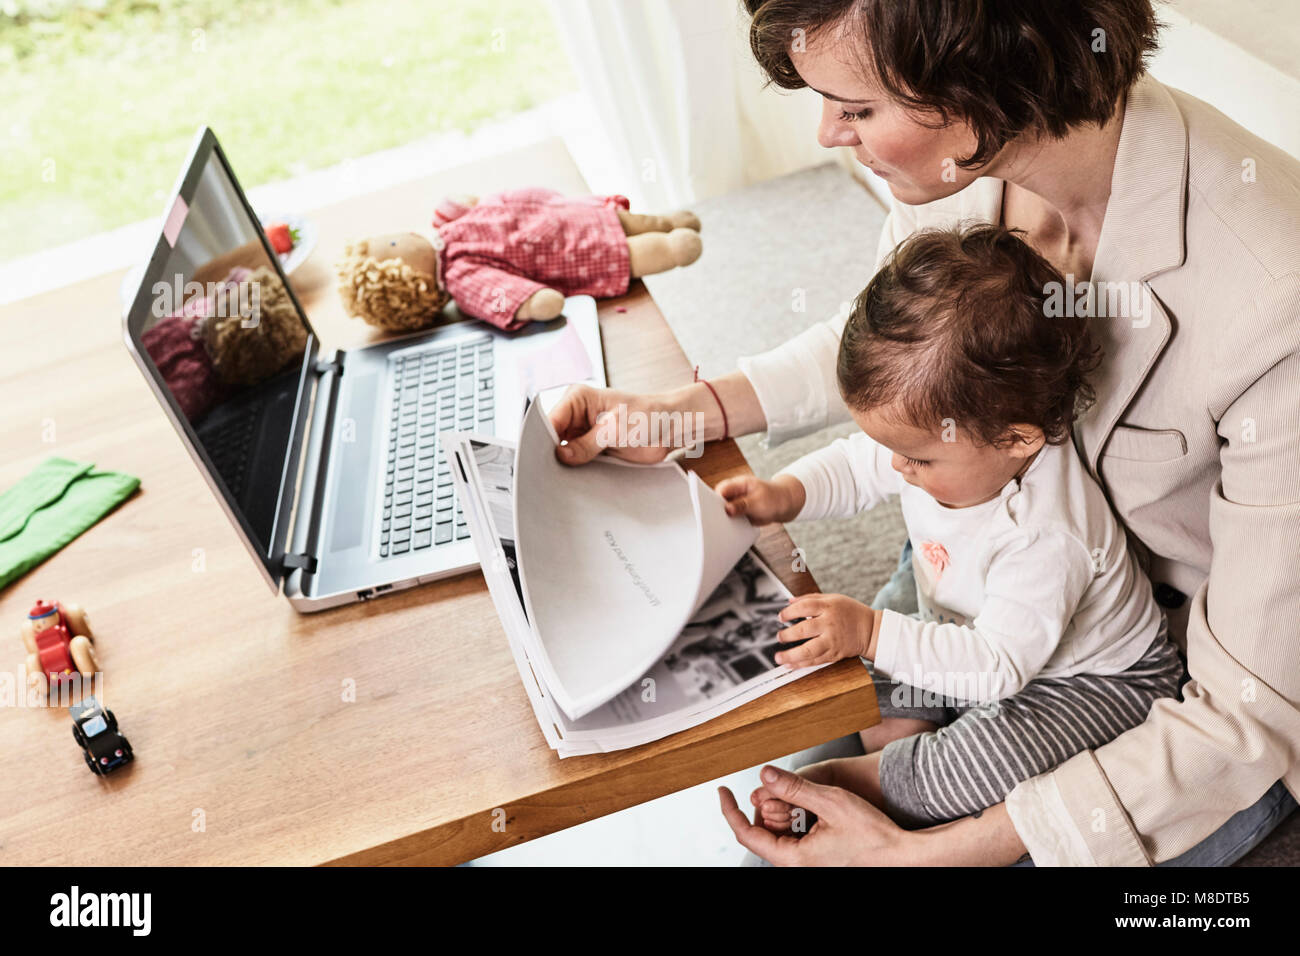 Mutter sitzend mit Baby, Schreibarbeit, Laptop auf dem Tisch vor ihr Stockfoto